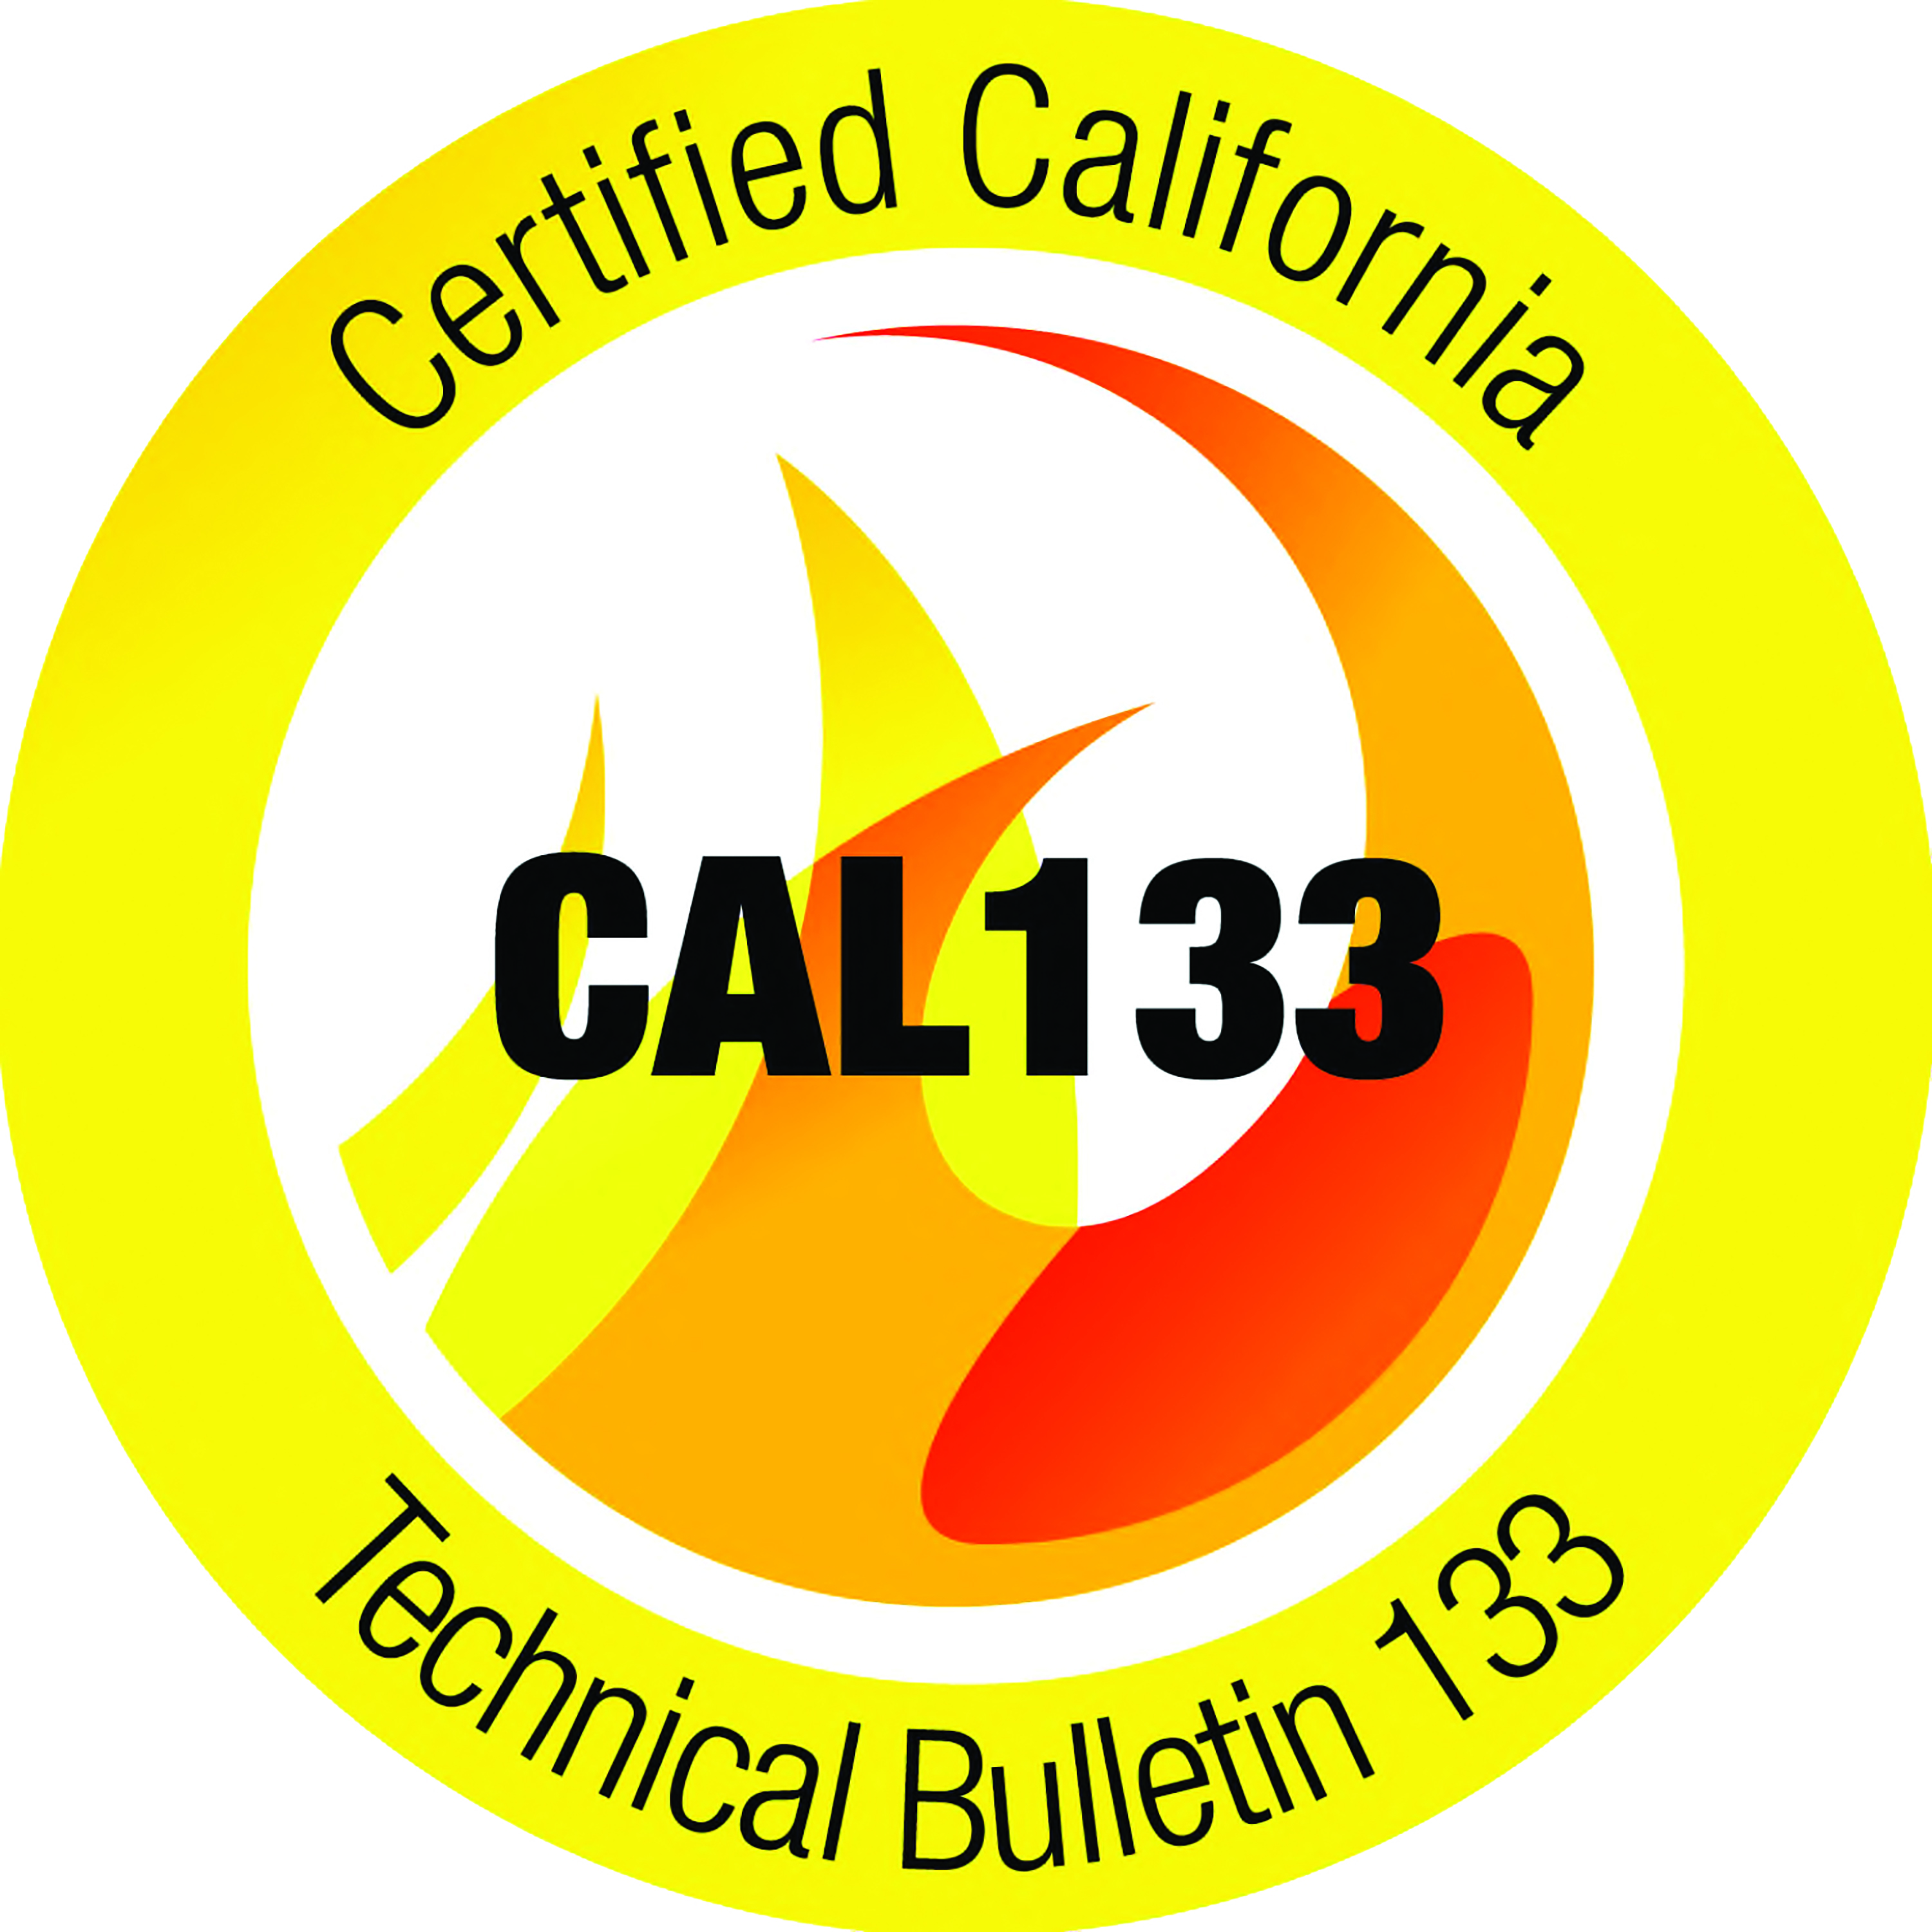 Cal133 